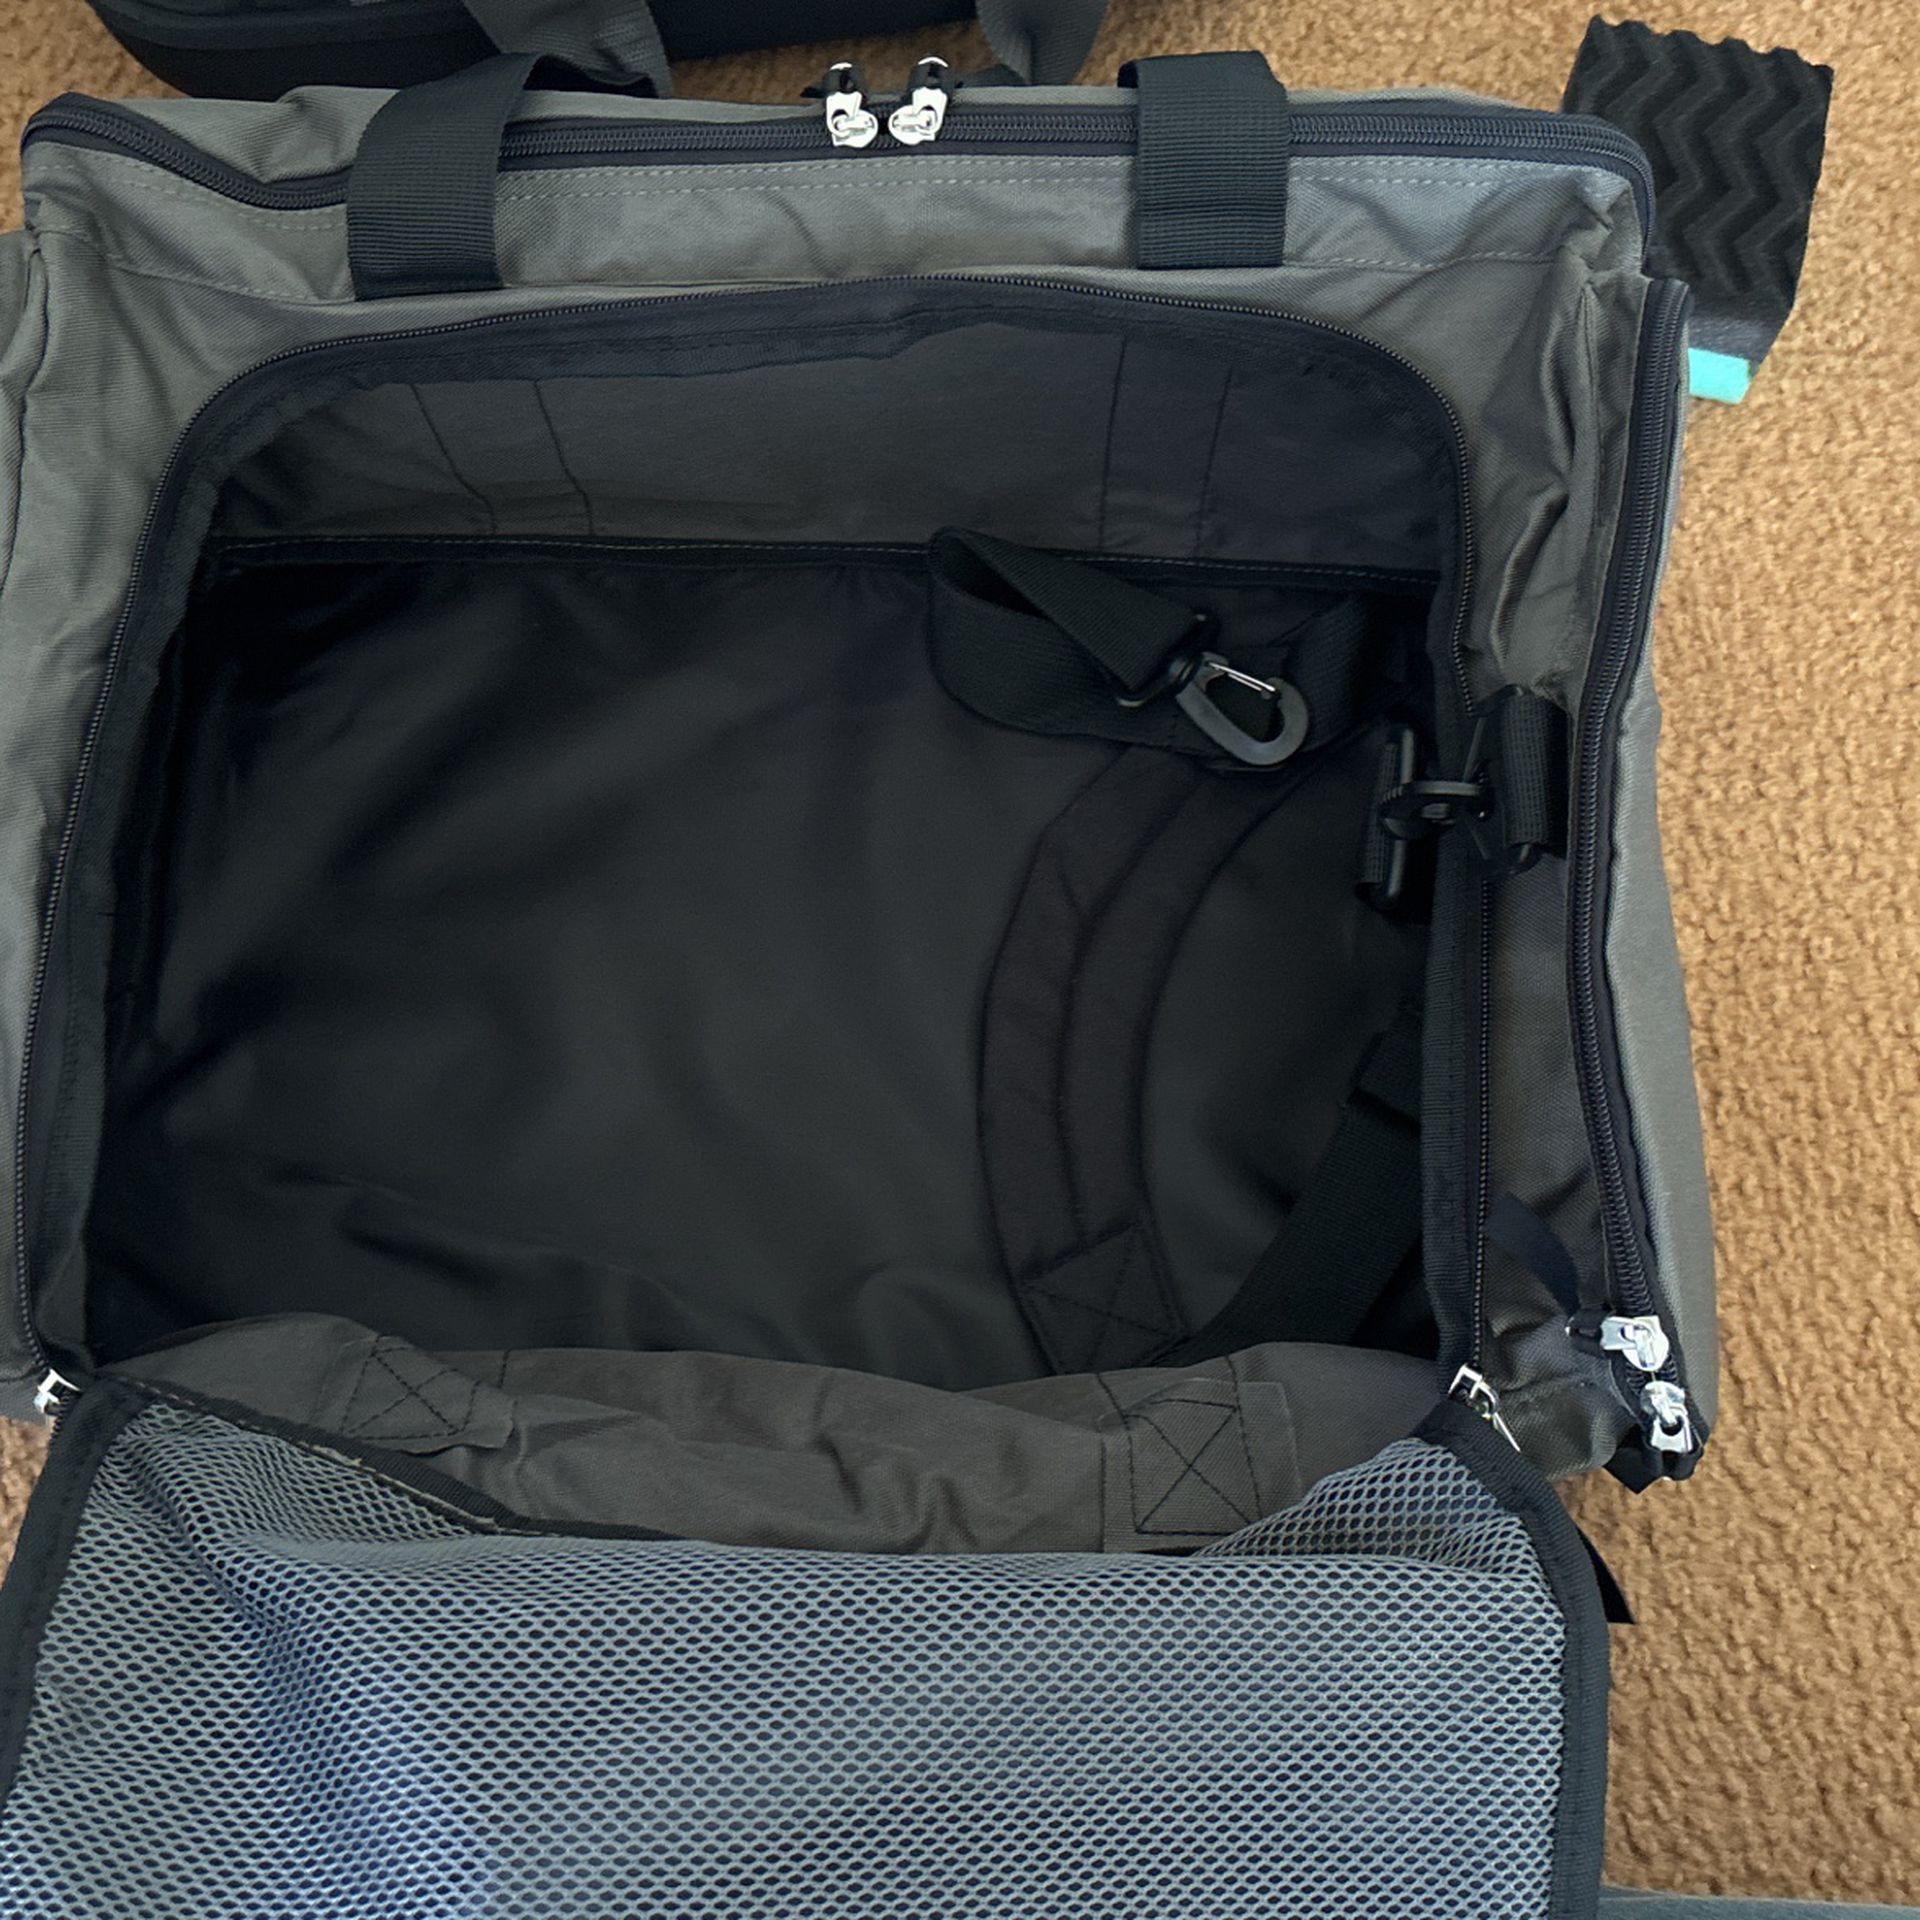 Duffle bag/ Gym bag